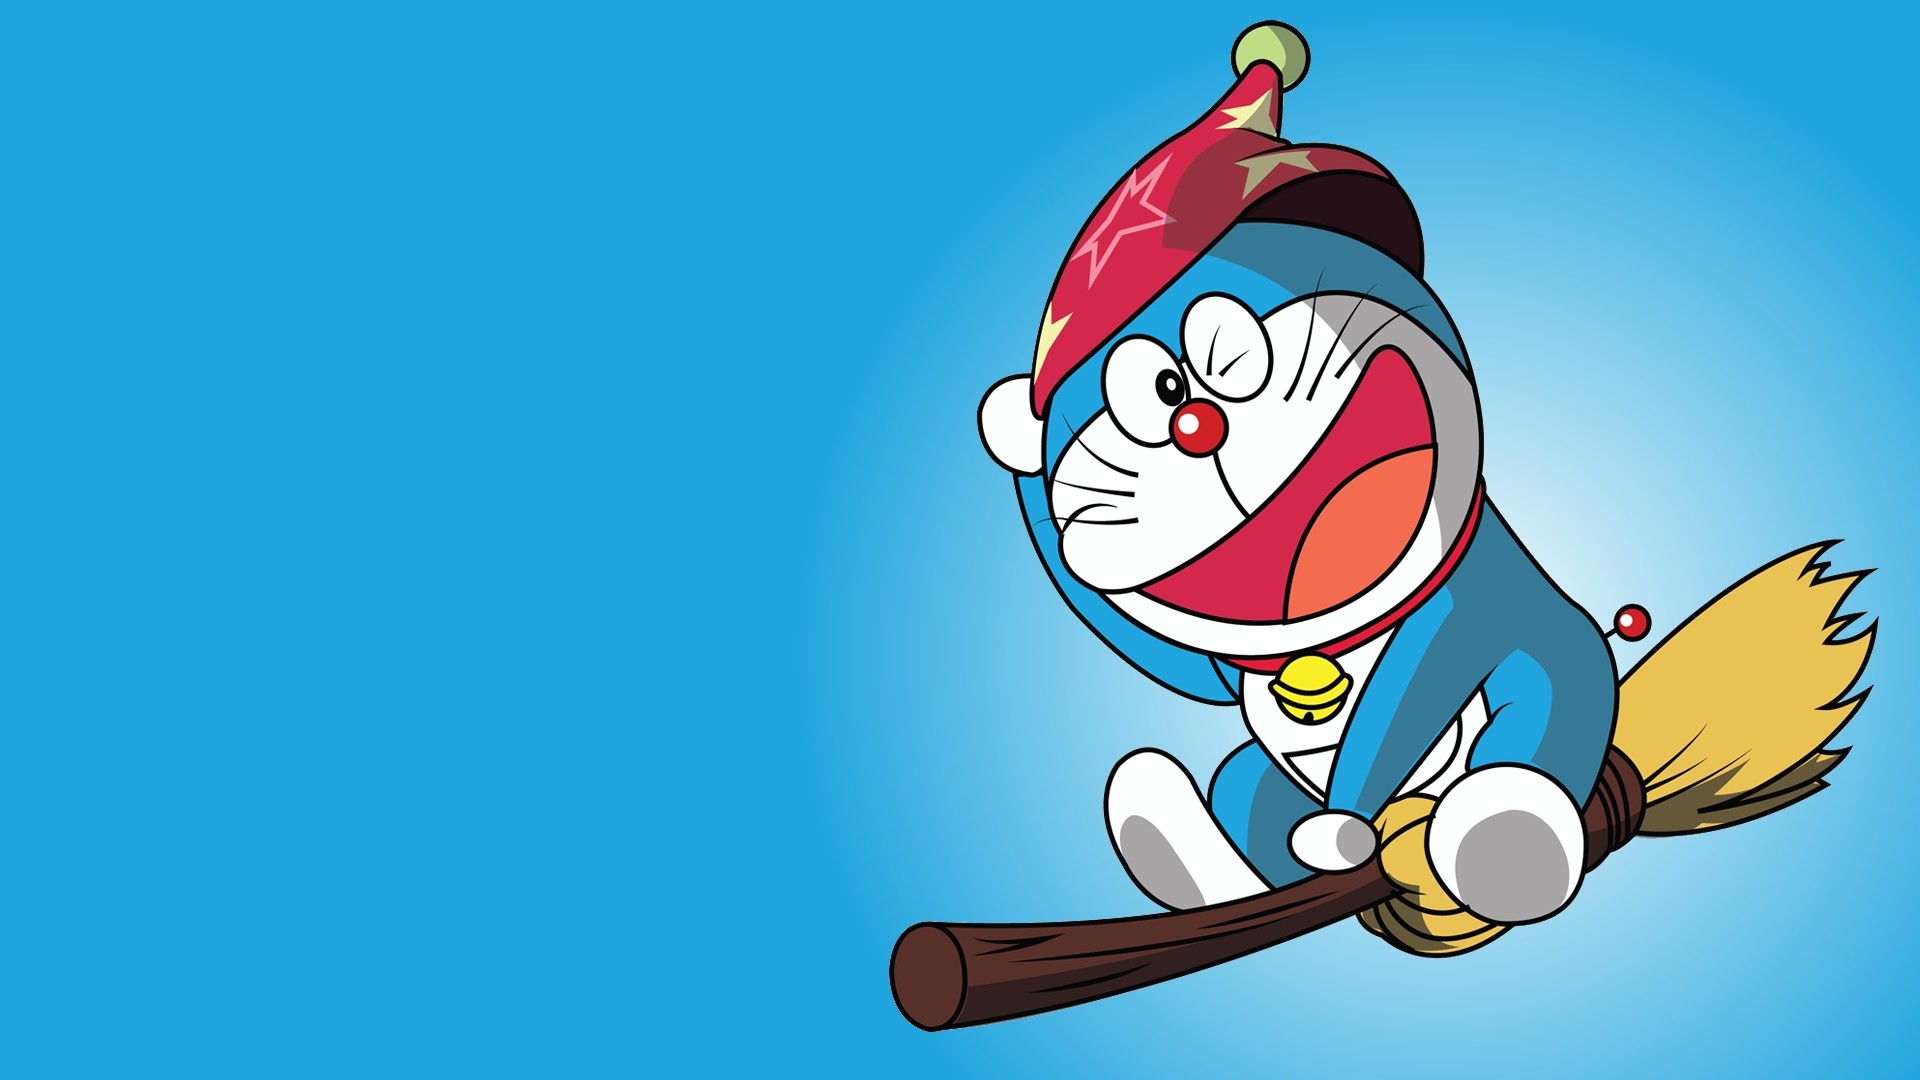 Doraemon với những hình nền độc đáo chắc chắn sẽ làm bạn say mê ngay từ cái nhìn đầu tiên. Từ những bức hình tĩnh đến những hình nền động đầy sinh động, chắc chắn sẽ đáp ứng được nhu cầu của các fan hâm mộ. Tải ngay những hình nền Doraemon yêu thích của bạn và cảm nhận sự kỳ diệu của thế giới hoạt hình đầy màu sắc này.